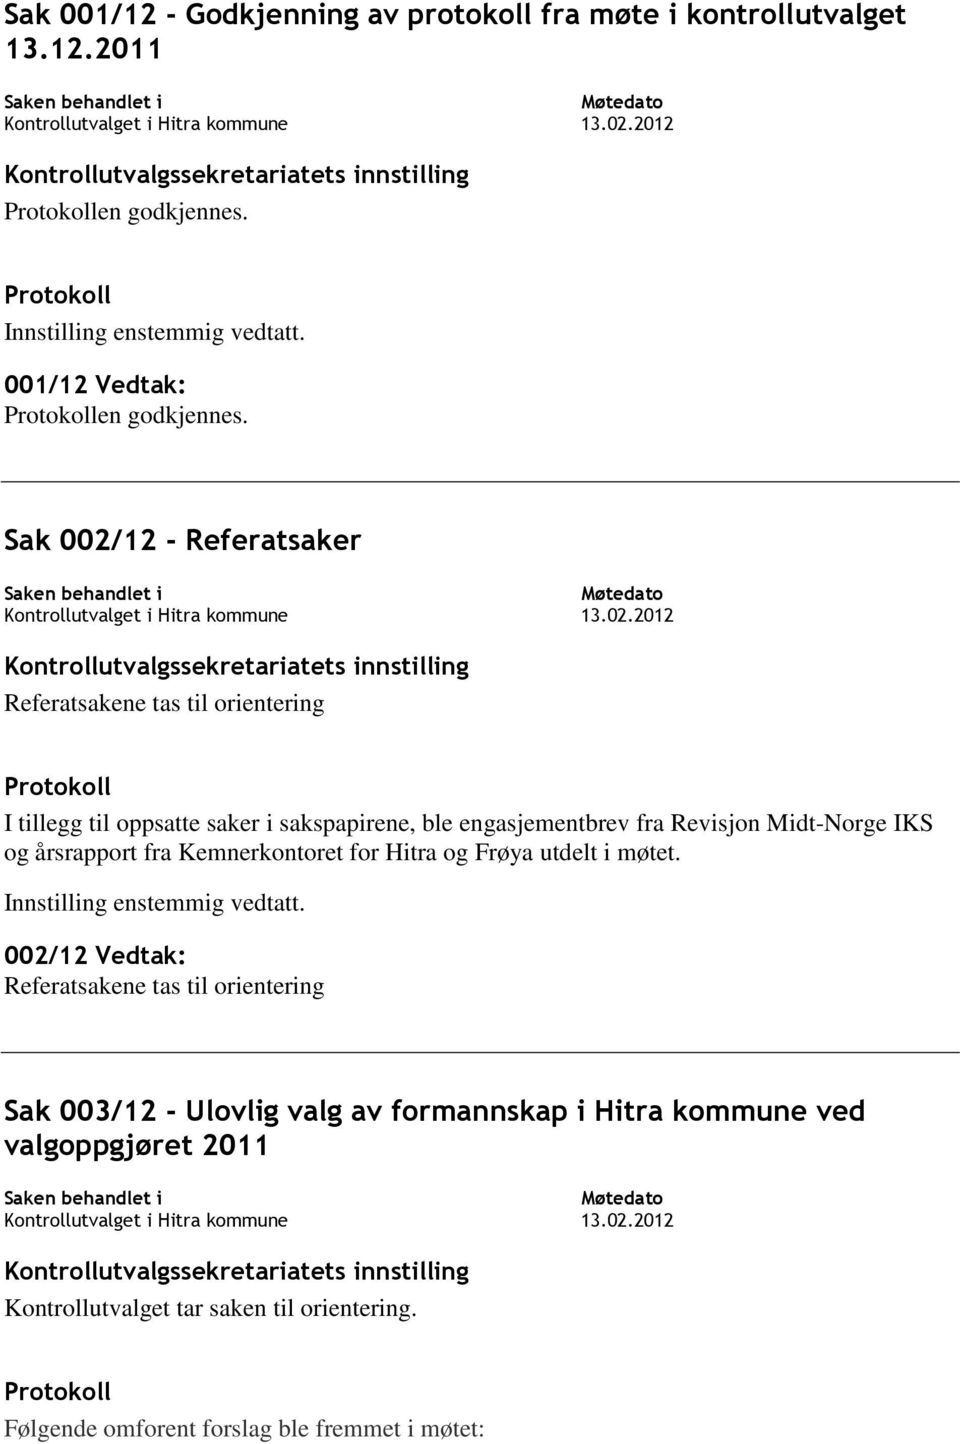 Midt-Norge IKS og årsrapport fra Kemnerkontoret for Hitra og Frøya utdelt i møtet.